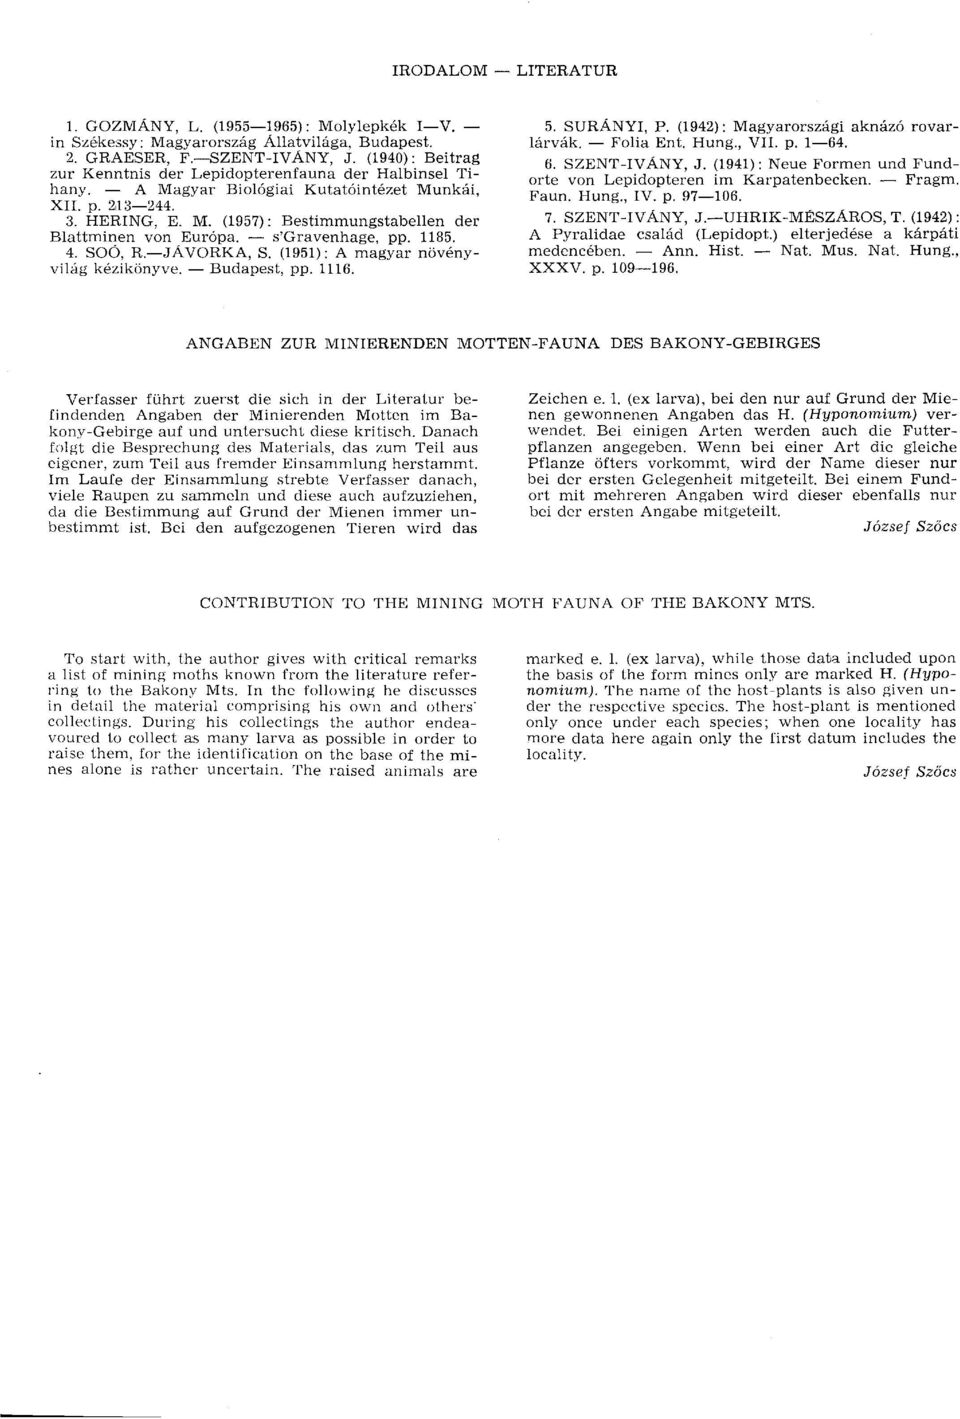 s'gravenhage, pp. 1185. 4. SOÖ, R JÁVORKA, S. (1951) : A magyar növényvilág kézikönyve. Budapest, pp. 1116. 5. SURÁNYI, P. (1942): Magyarországi aknázó rovarlárvák. Folia Ent. Hung., VII. p. 1 64